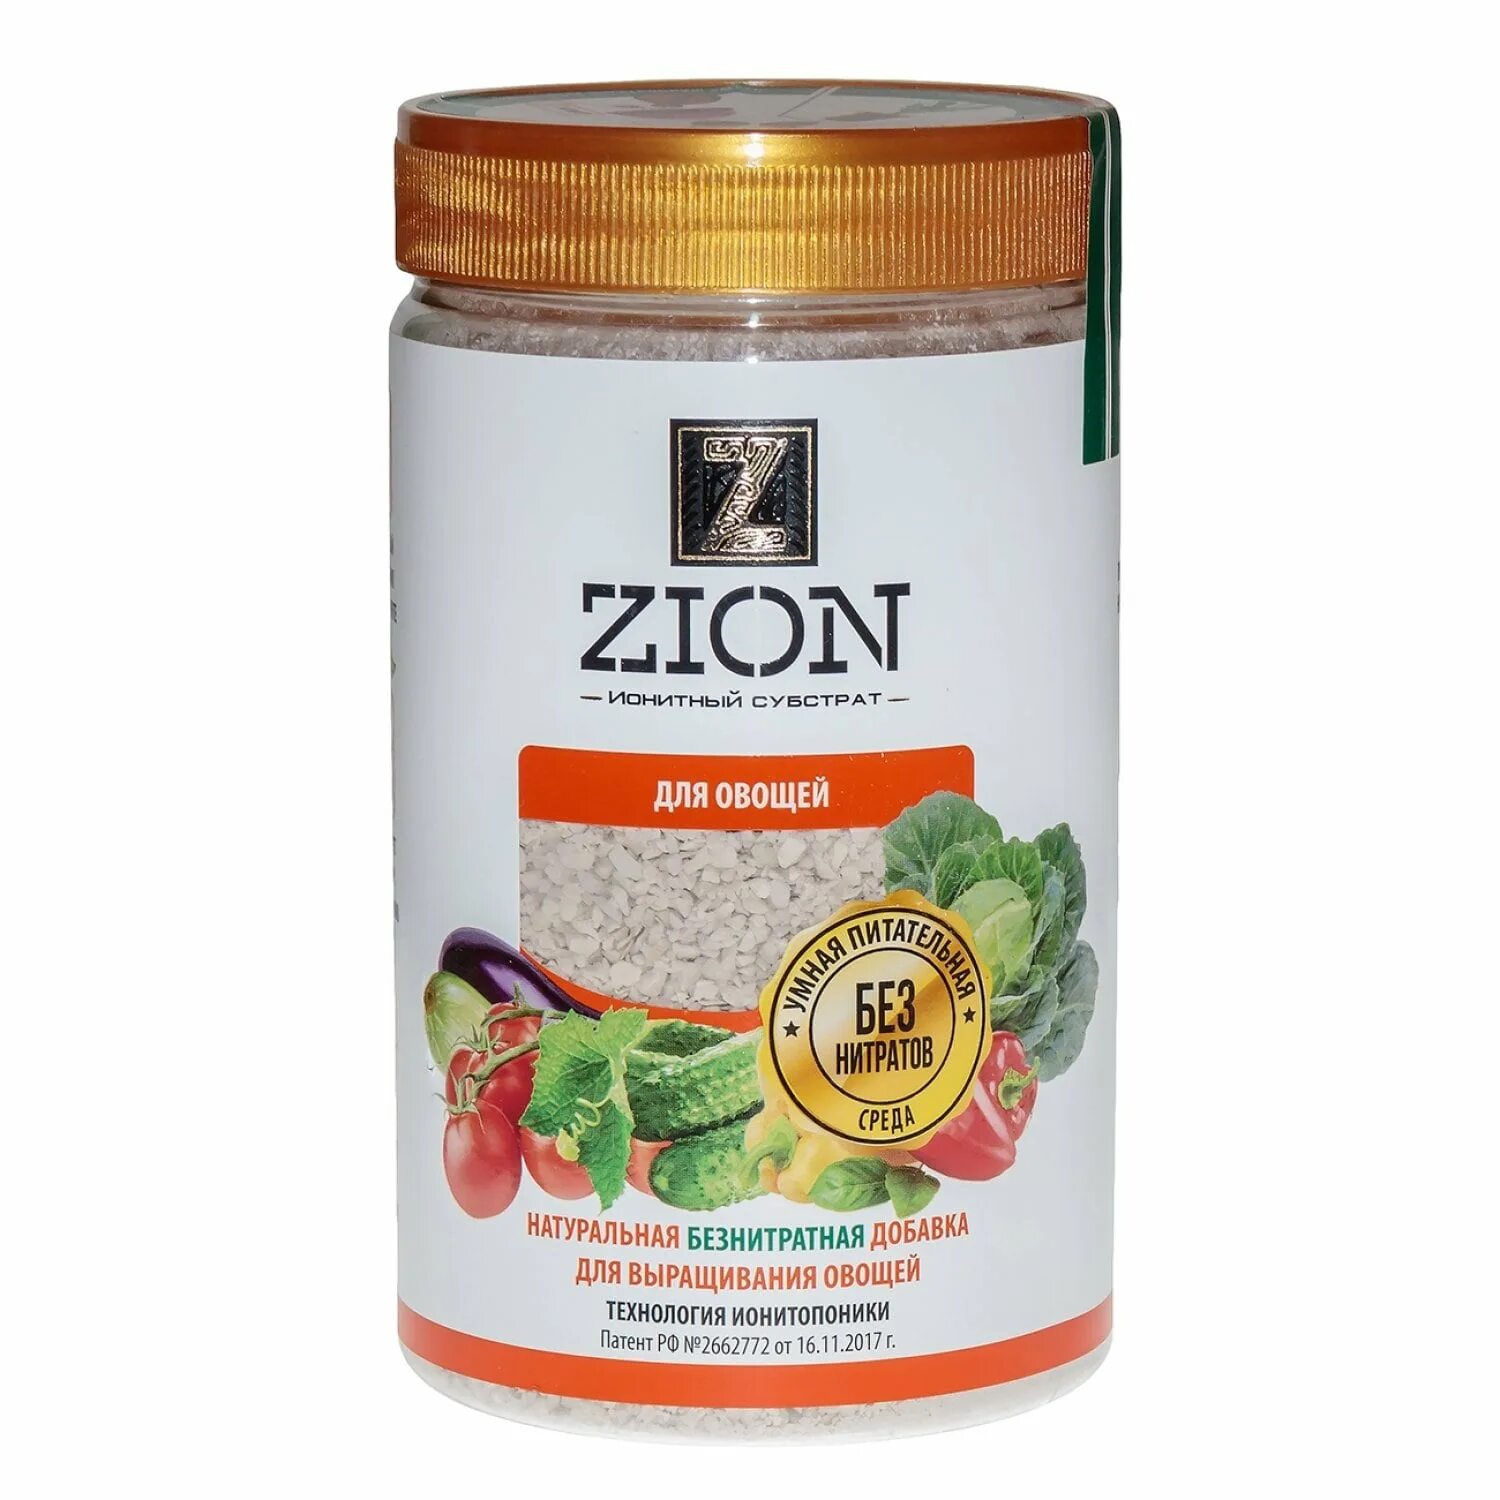 Zion (Цион) "для овощей" 700гр. Цион для овощей 700гр. Банка. Zion ионитный субстрат для овощей 30 гр. Удобрение Zion ионитный субстрат для овощей.